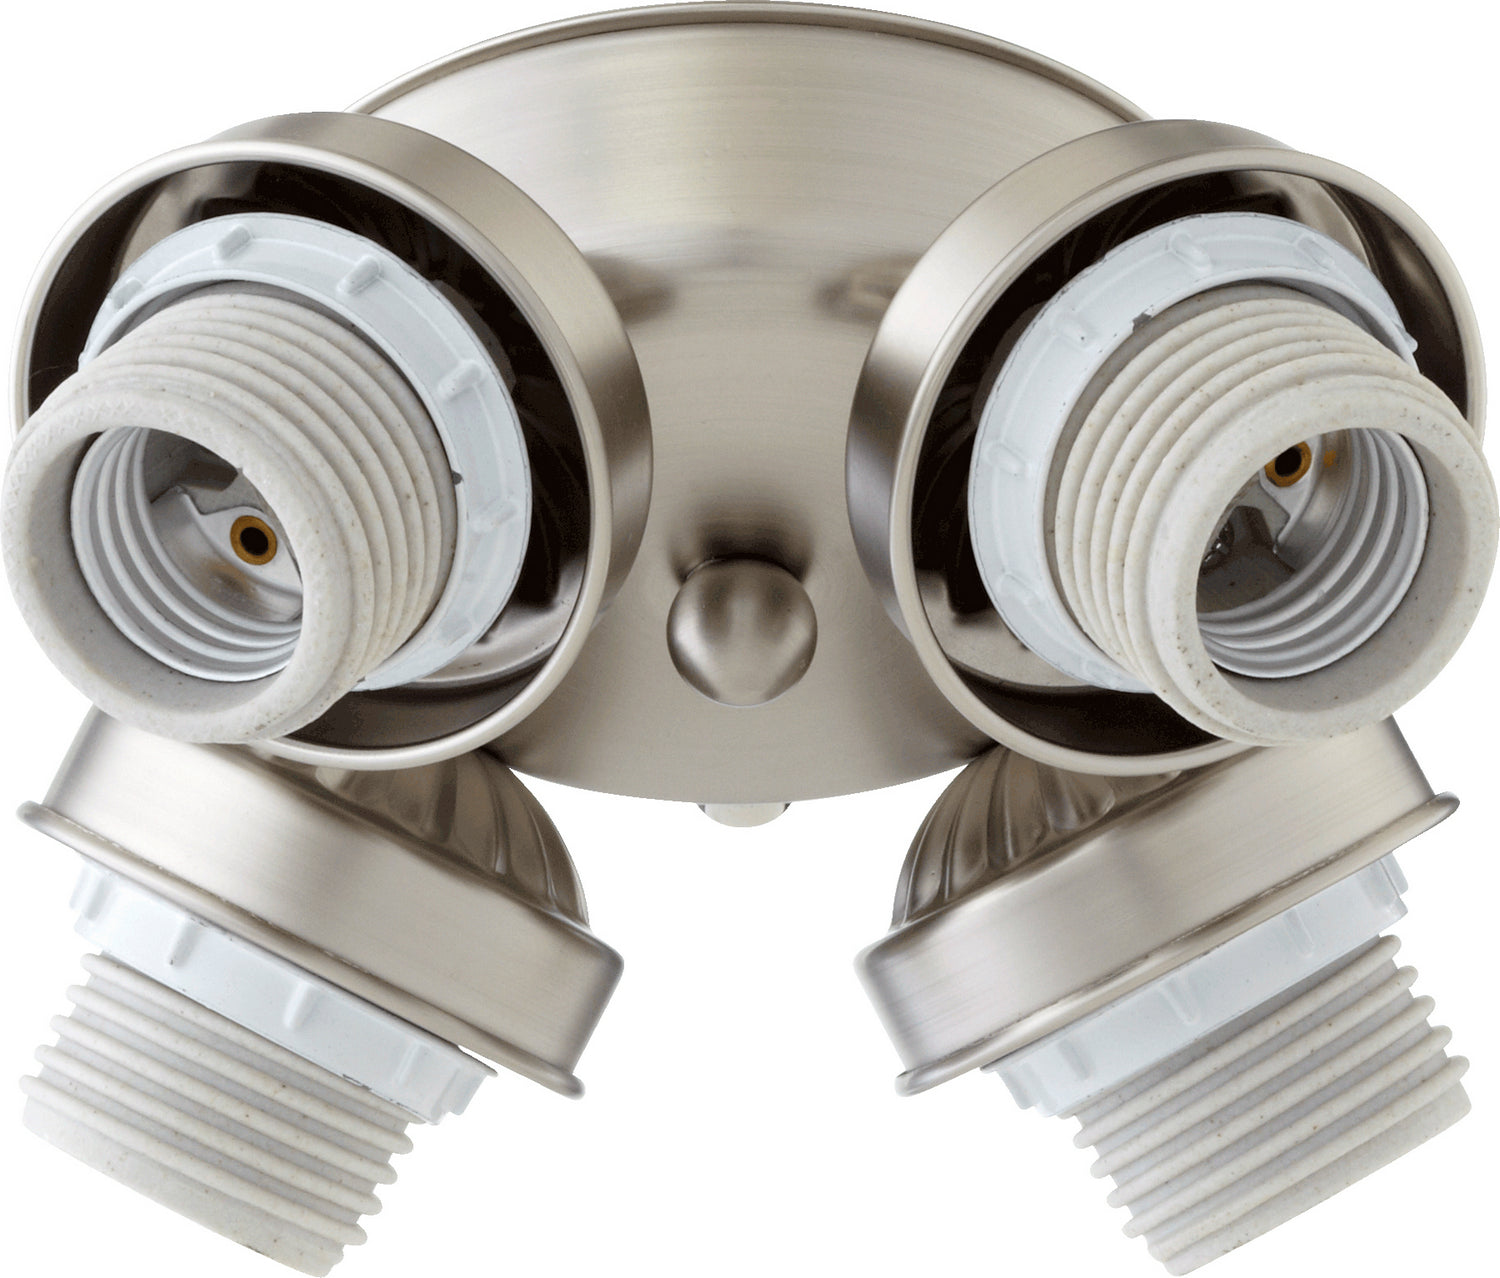 Quorum - 2401-8065 - LED Fan Light Kit - 2401 Light Kits - Satin Nickel